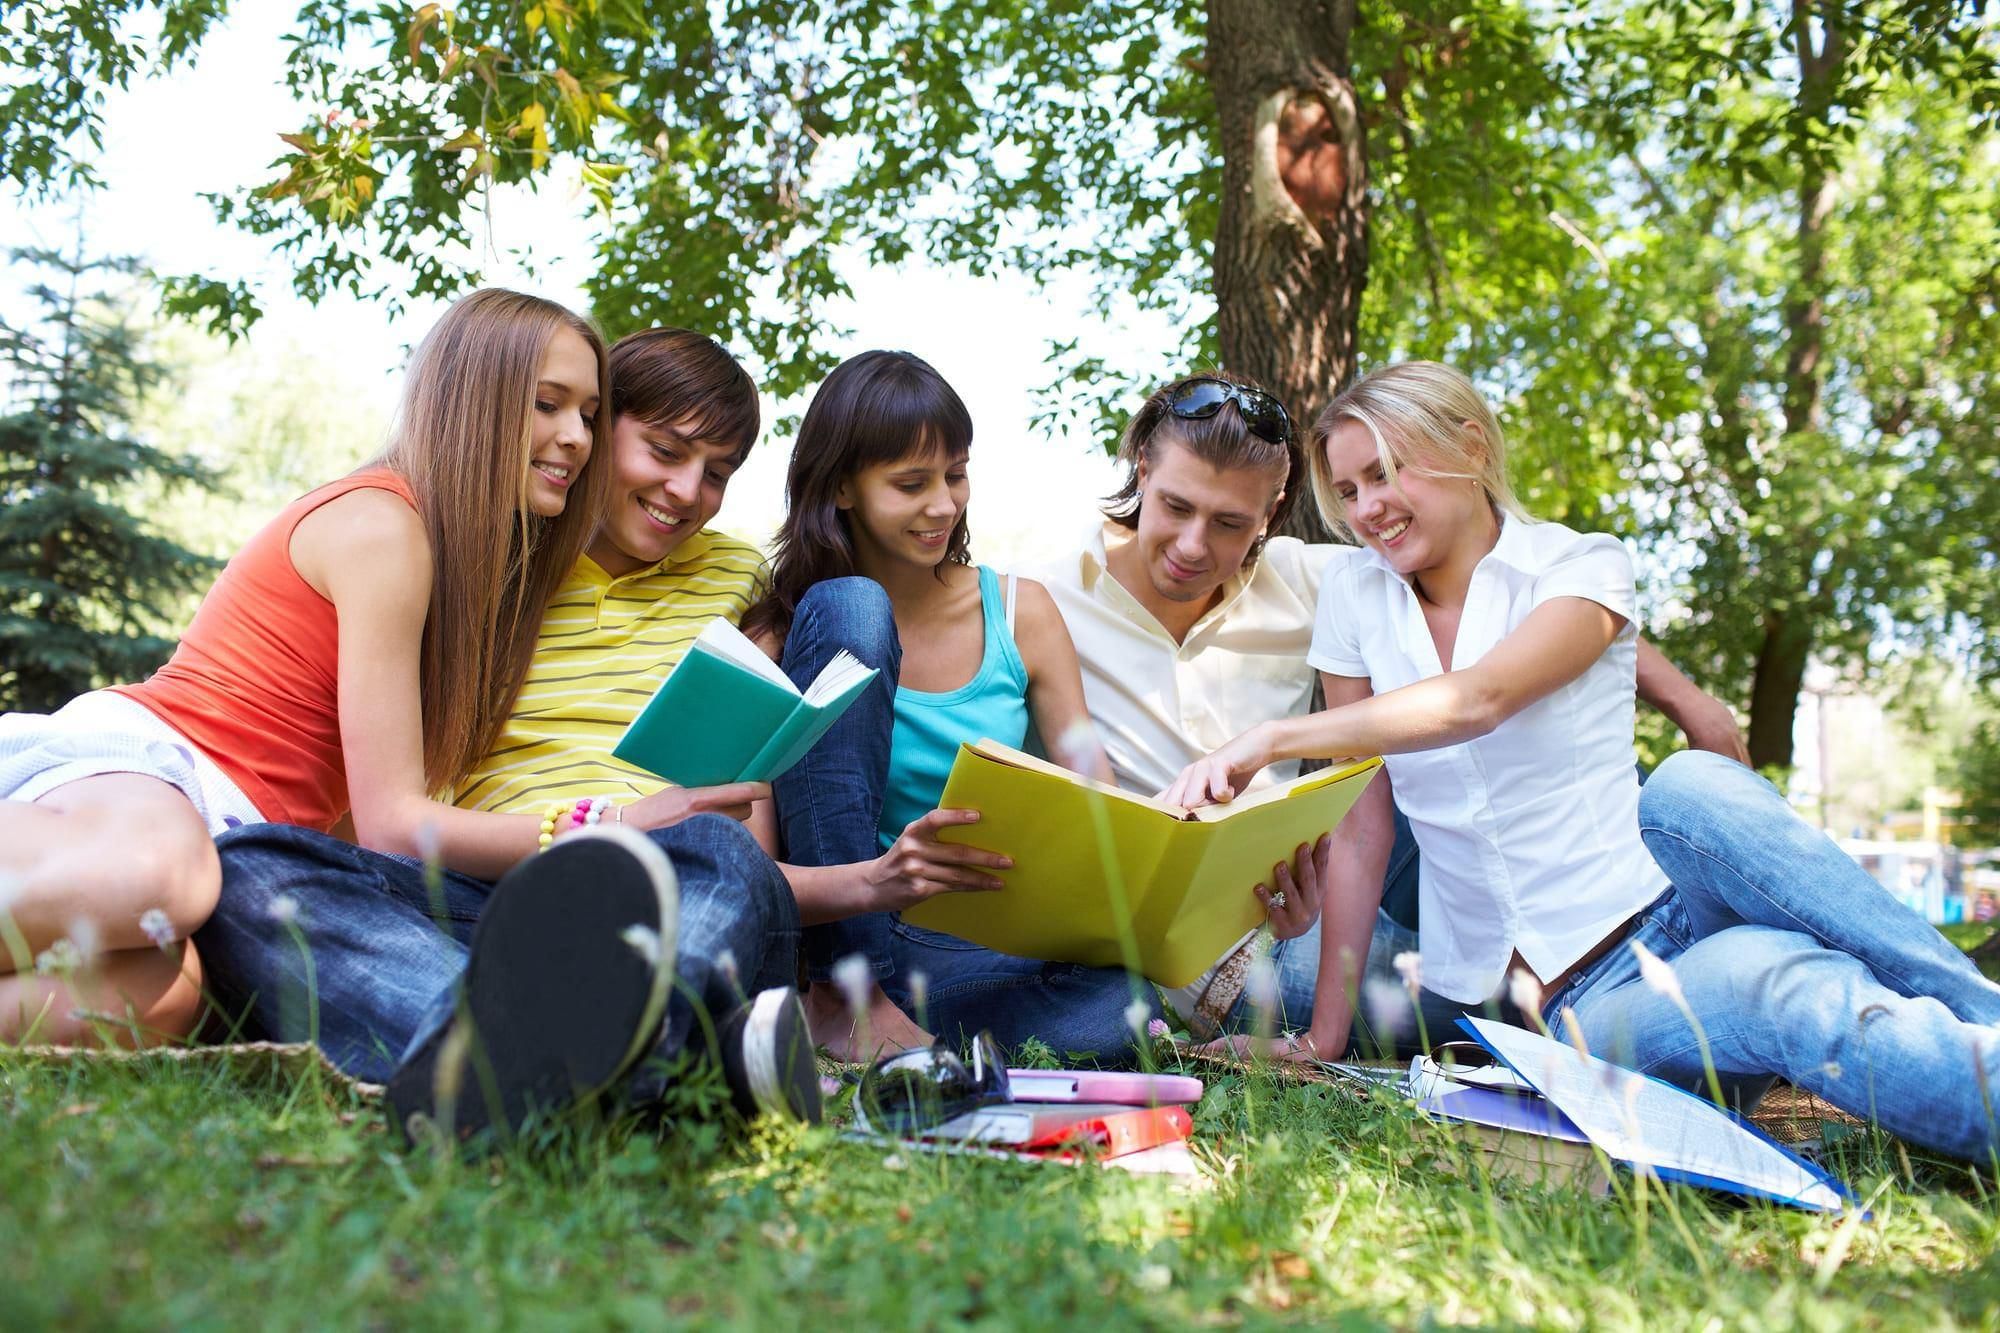 Роль и место молодежи. Студенты в парке. Молодежь и природа летом. Счастливая молодежь на природе. Лето с книгой.